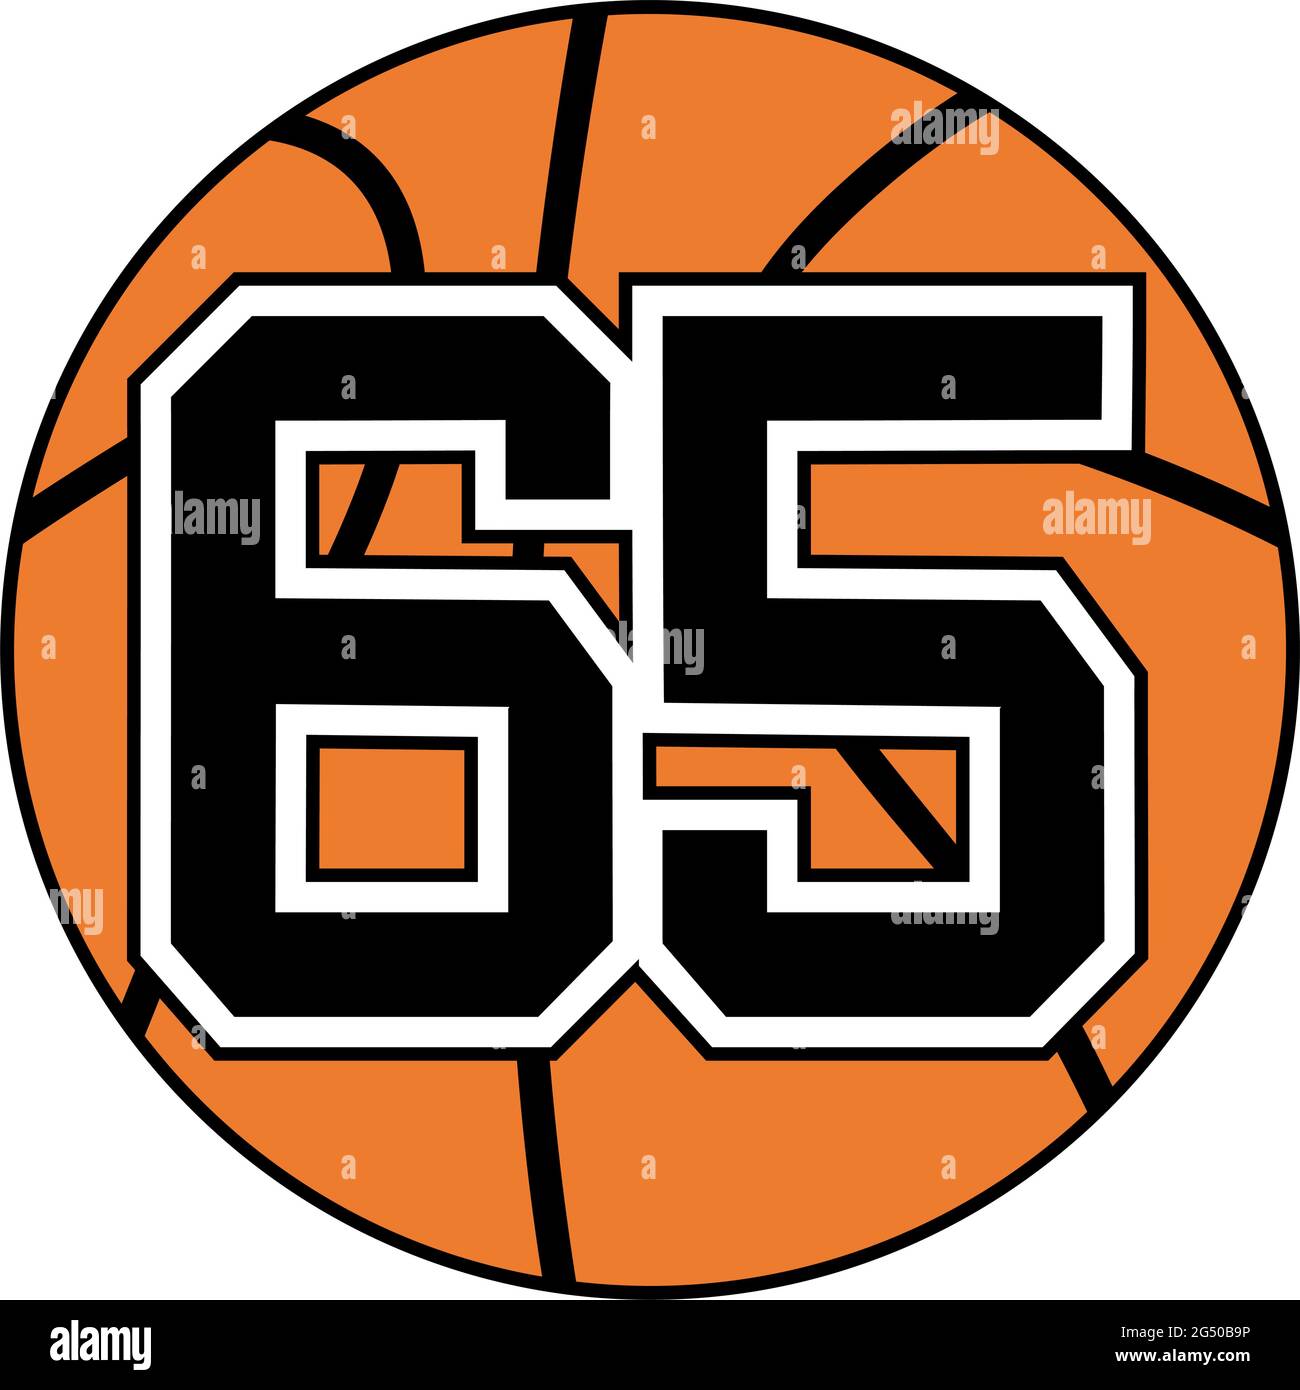 palla di simbolo di basket con numero 65 Illustrazione Vettoriale